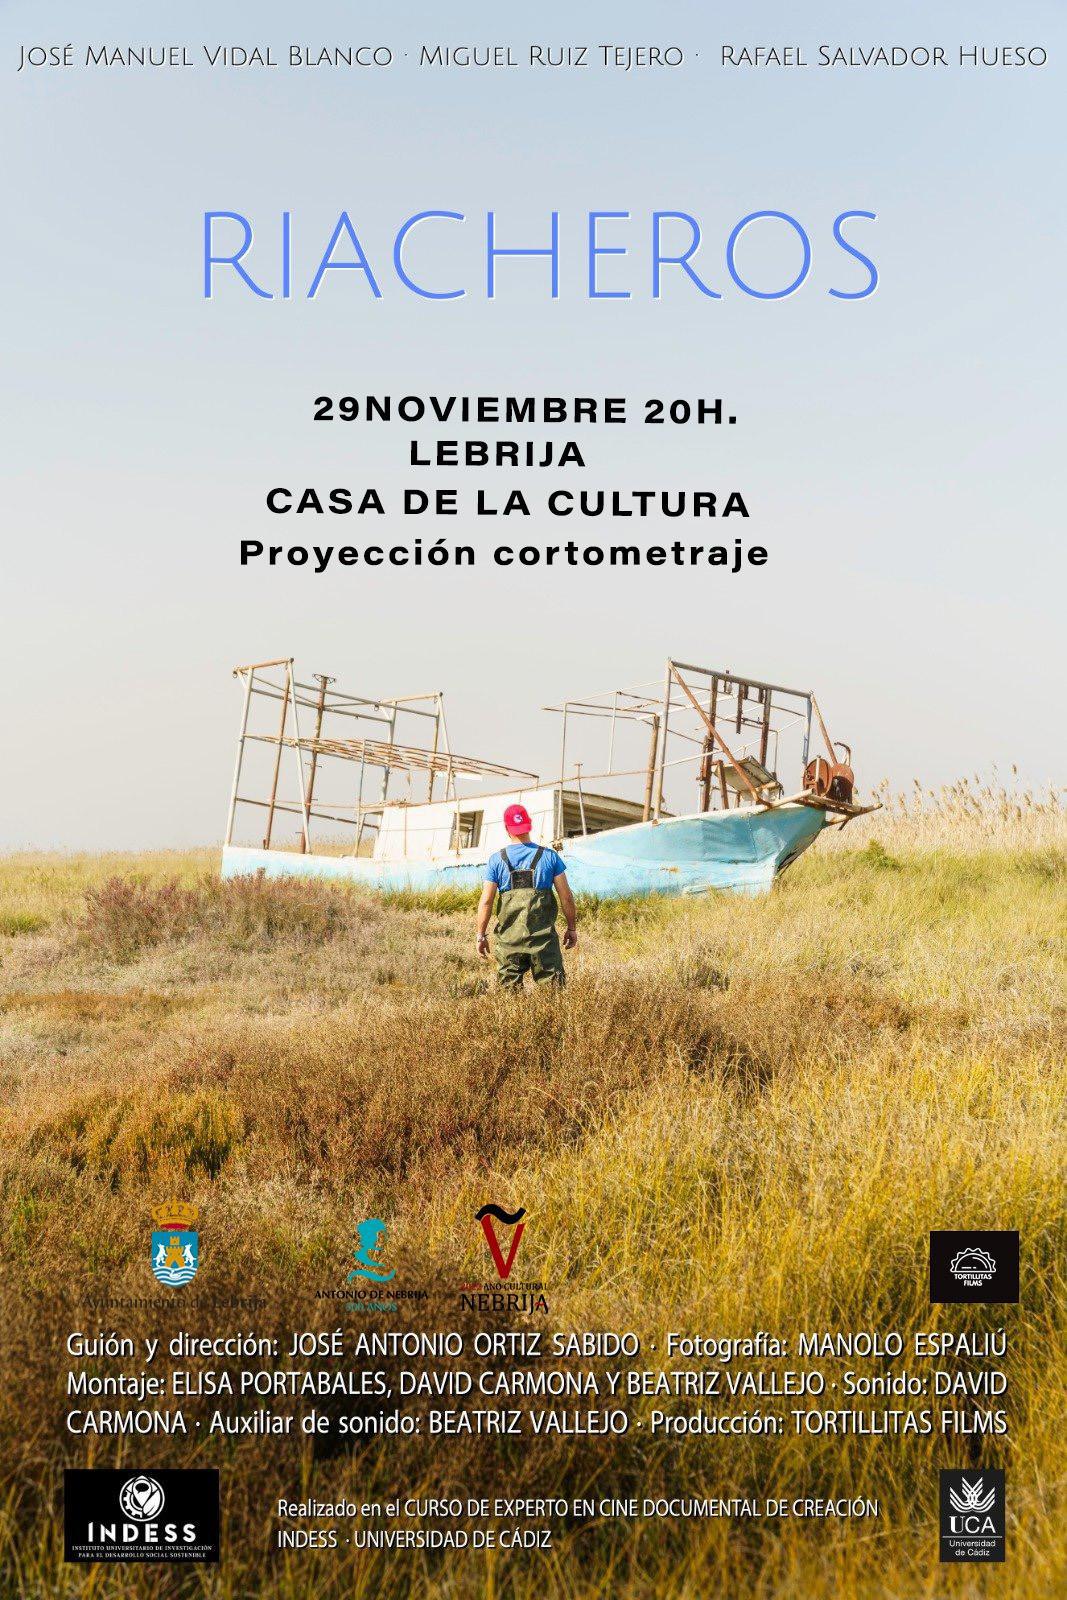 La Casa de la Cultura acogerá la proyección del cortometraje documental “Riacheros” el martes 29 de noviembre